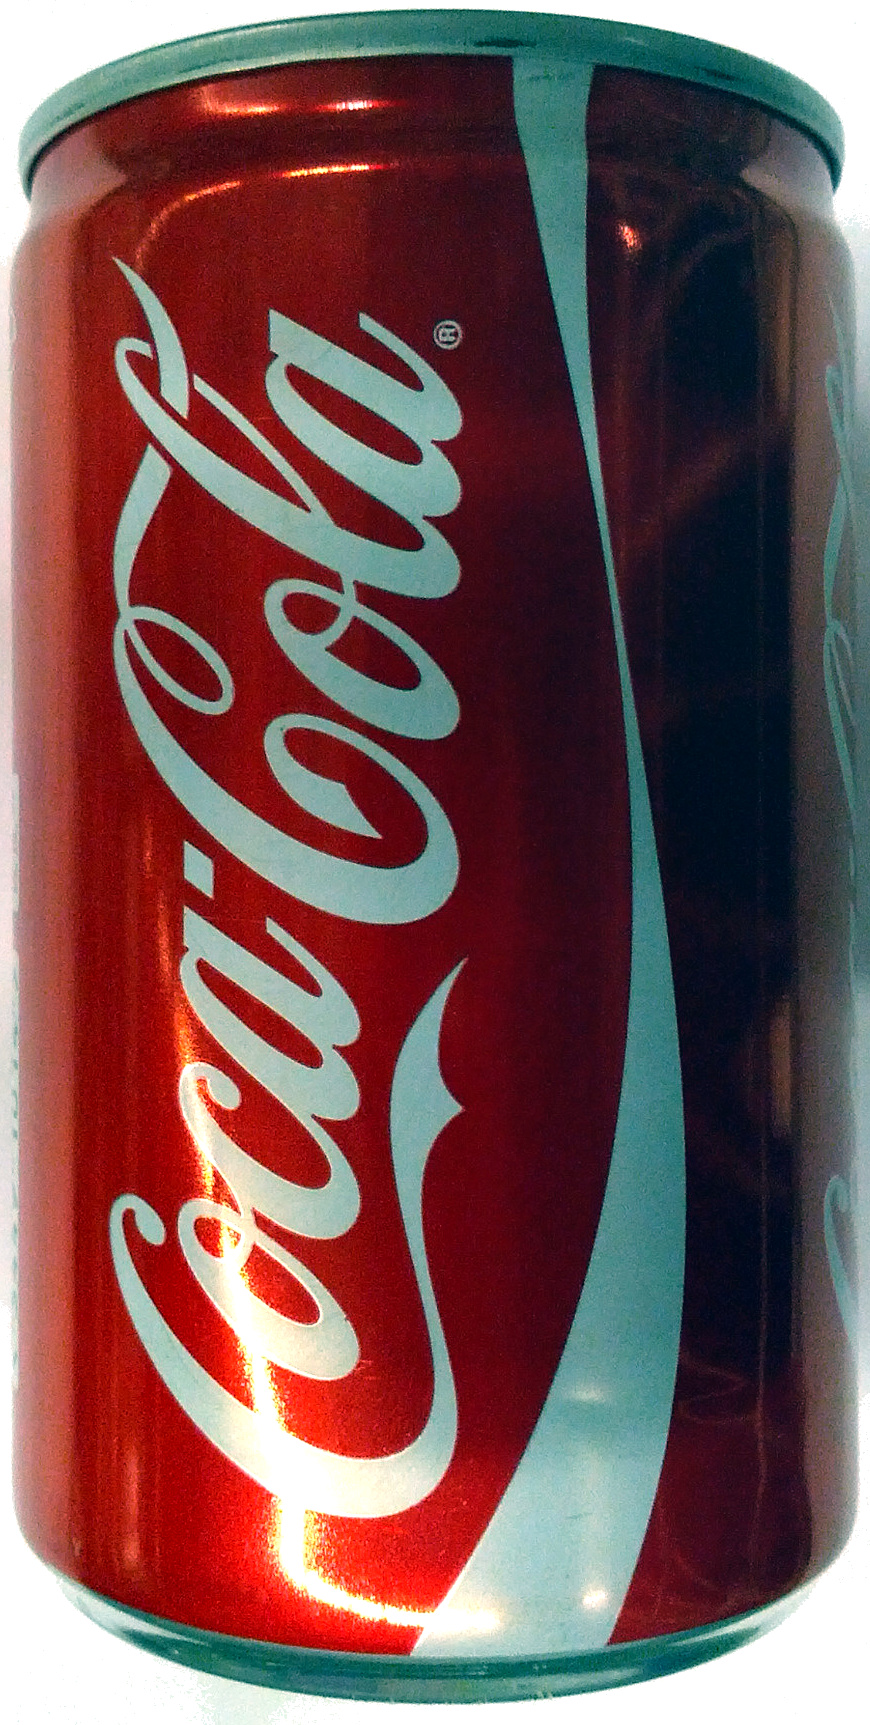 Coke Can 150ml - Product - en